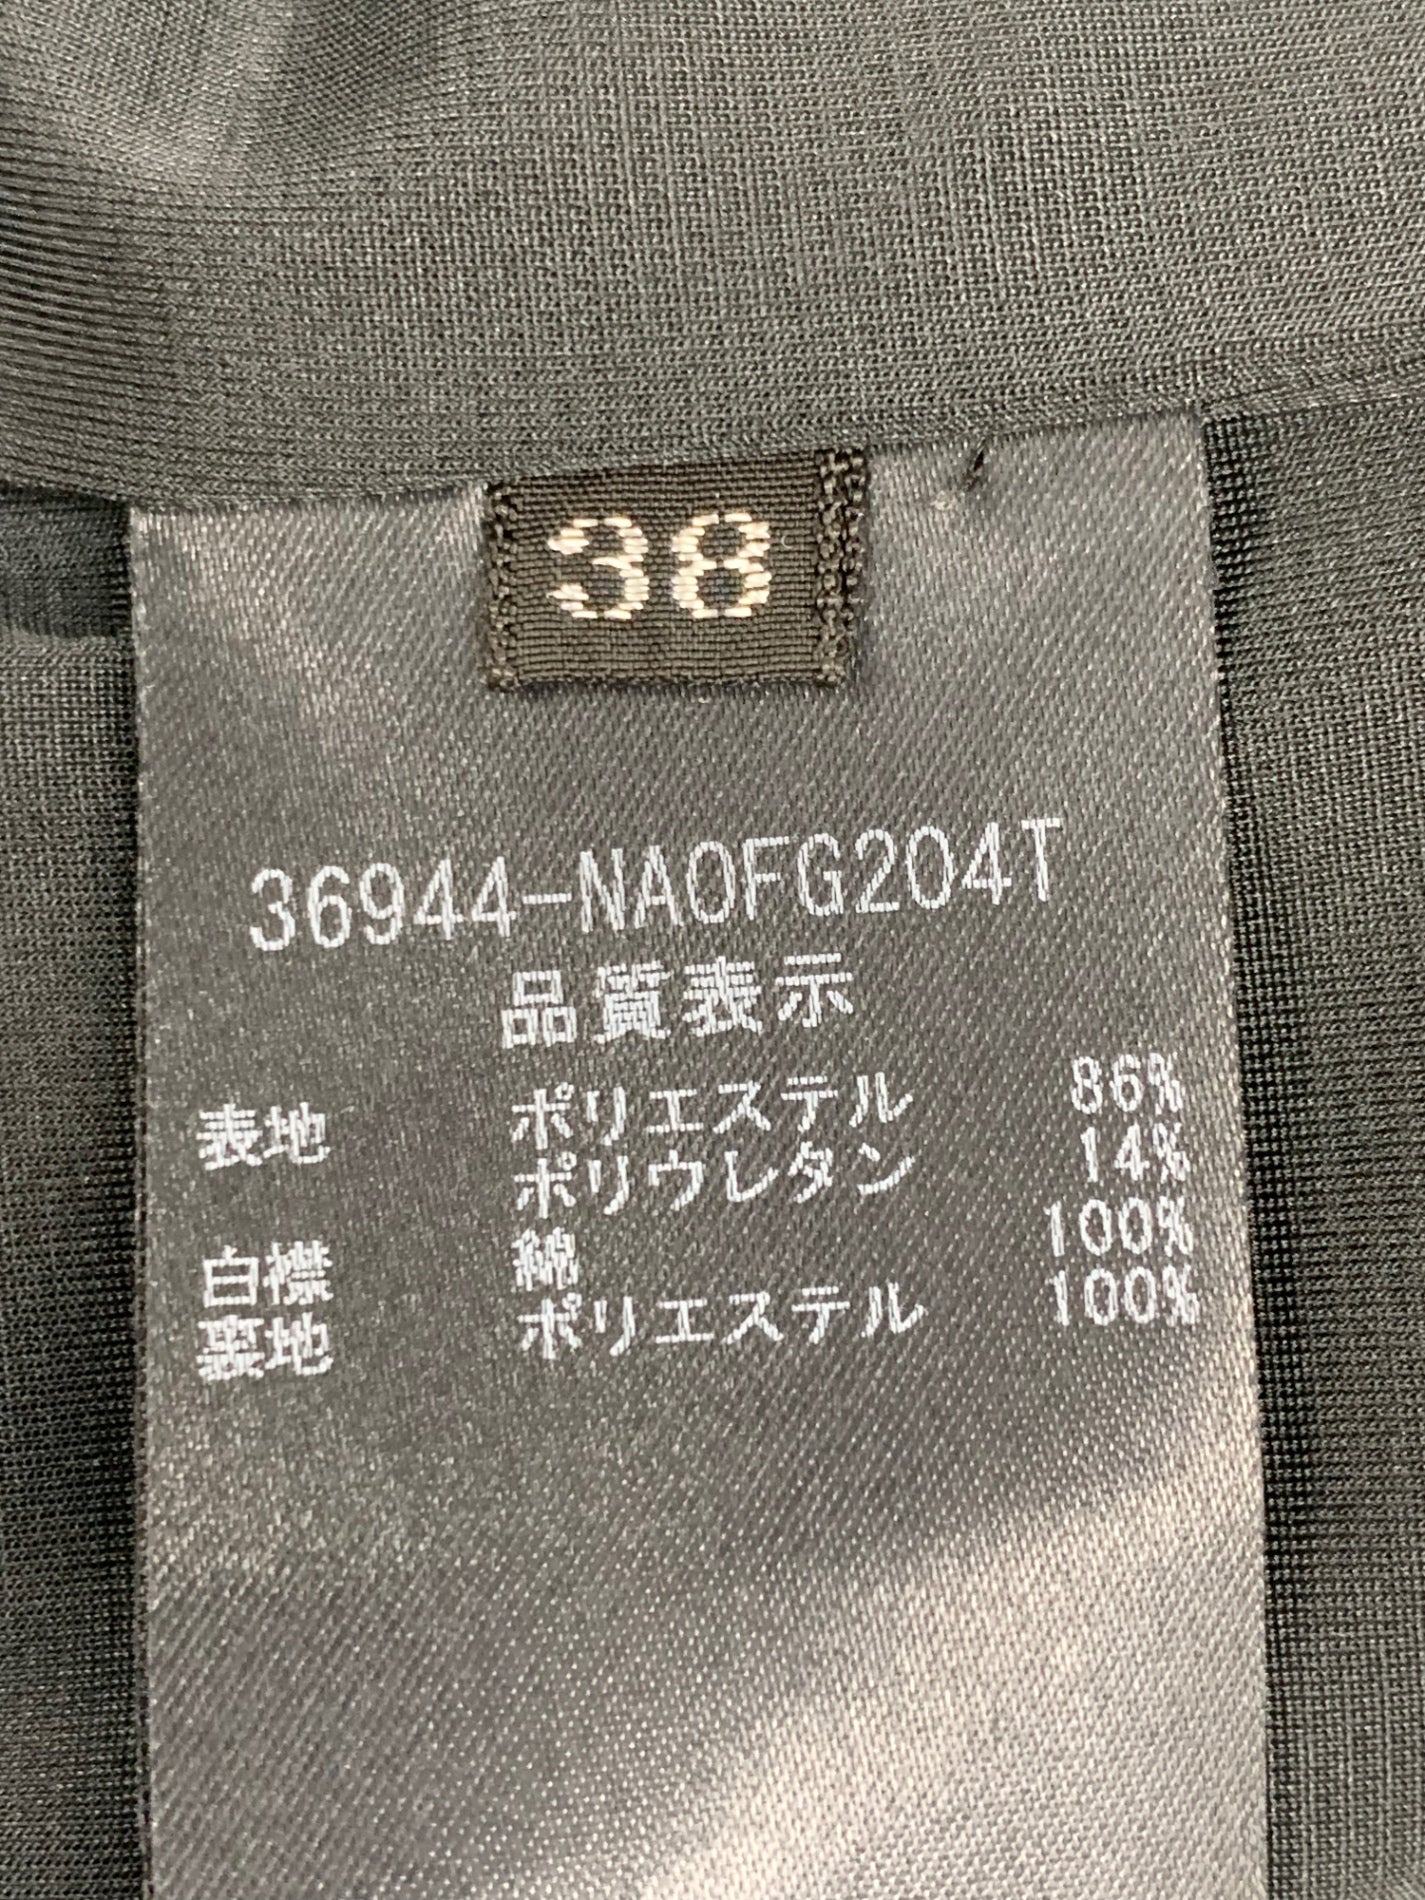 フォクシーニューヨーク Private Noir 36944 ワンピース 38 ブラック 衿付き | 中古ブランド品・古着通販ビープライス